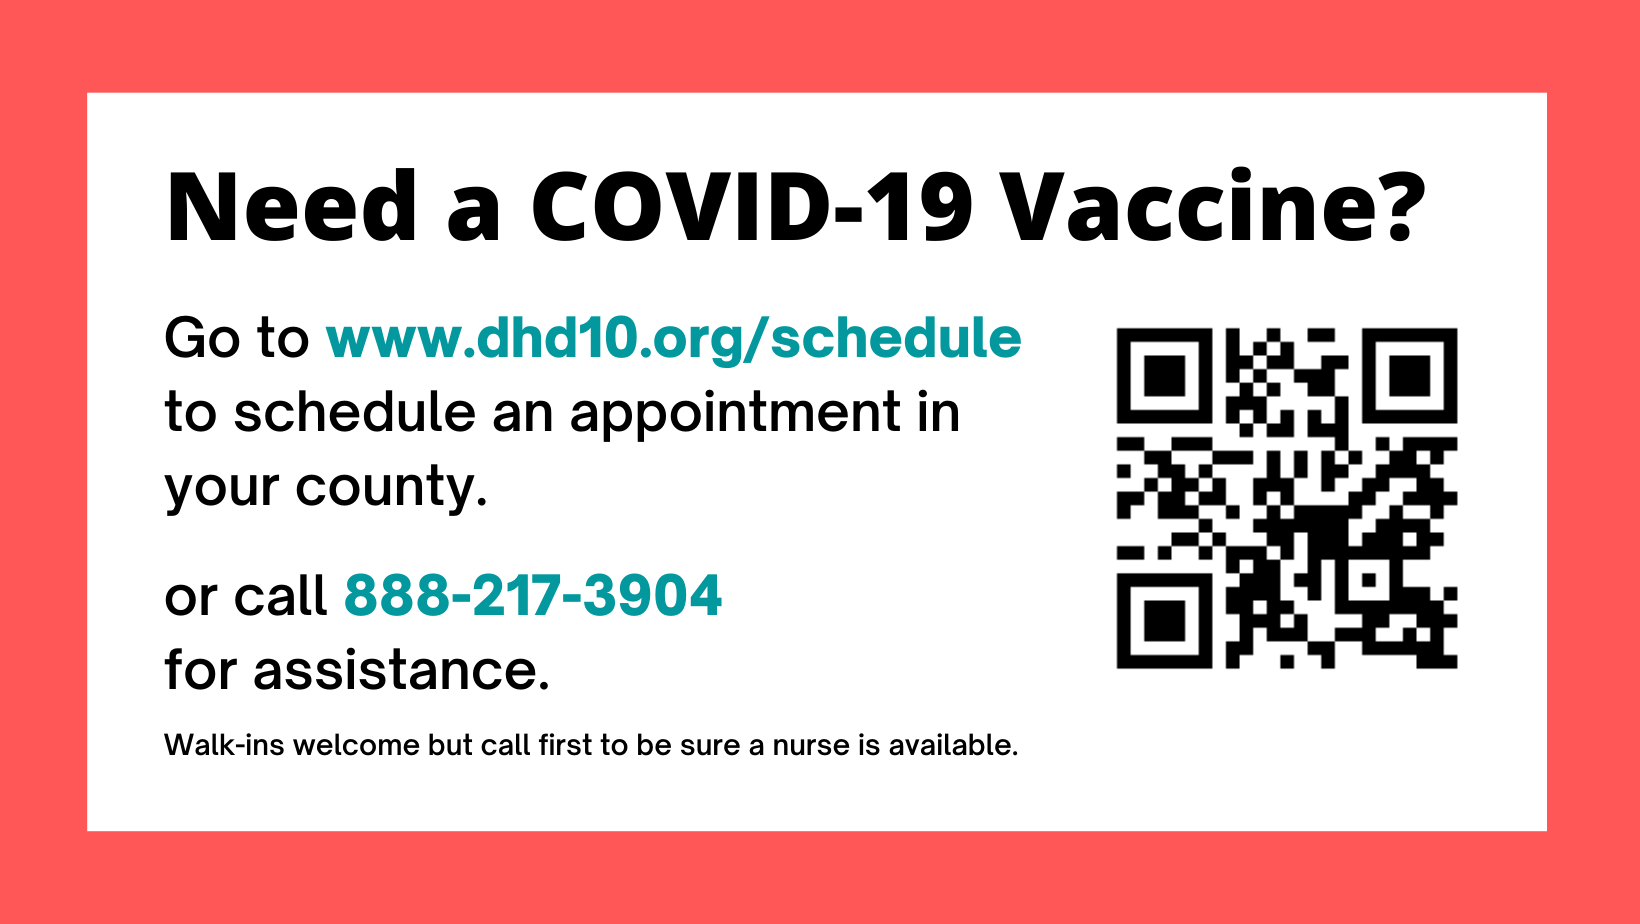 Need a COVID-19 Vaccine?